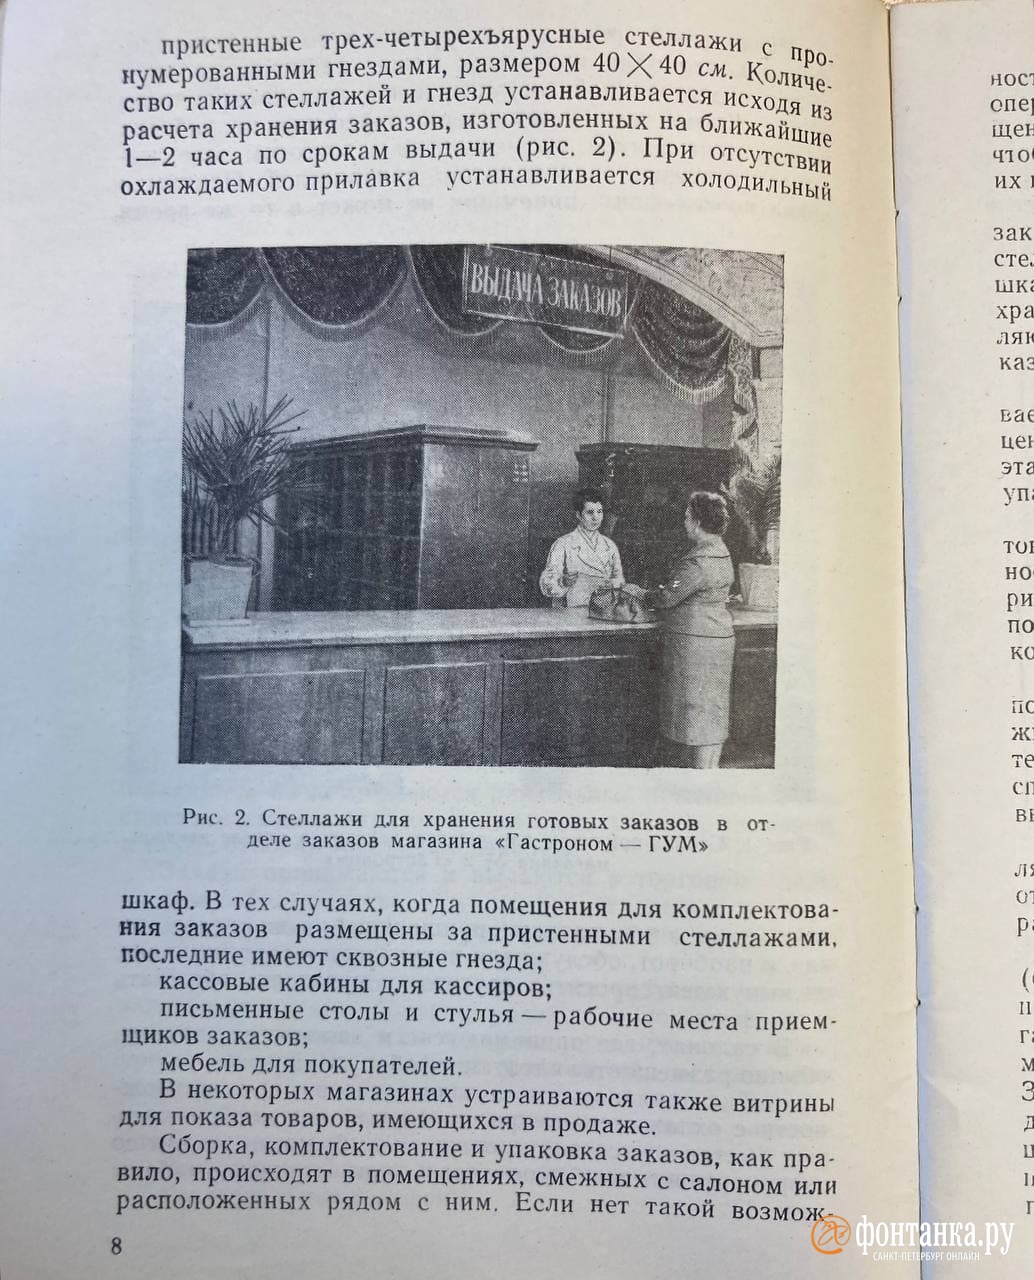 Страница брошюры «Заказы и доставка продовольственных товаров на дом», И.Р.Переплетчик, типография №12 УПП ЛСНХ, 1961 г.